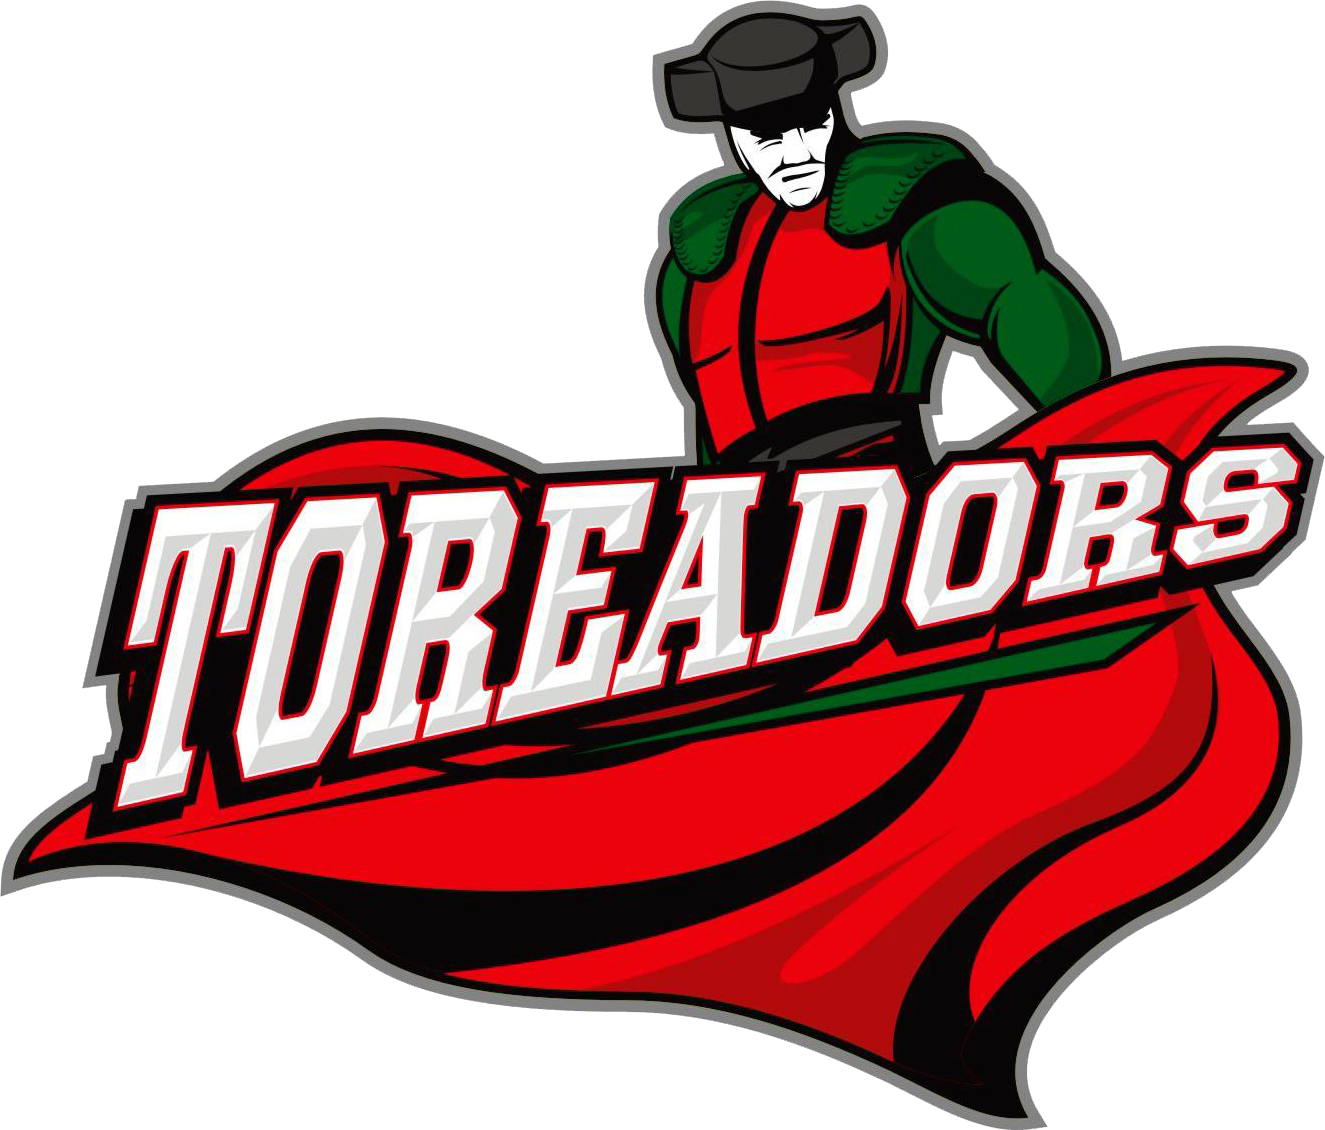 Toreadors Logo